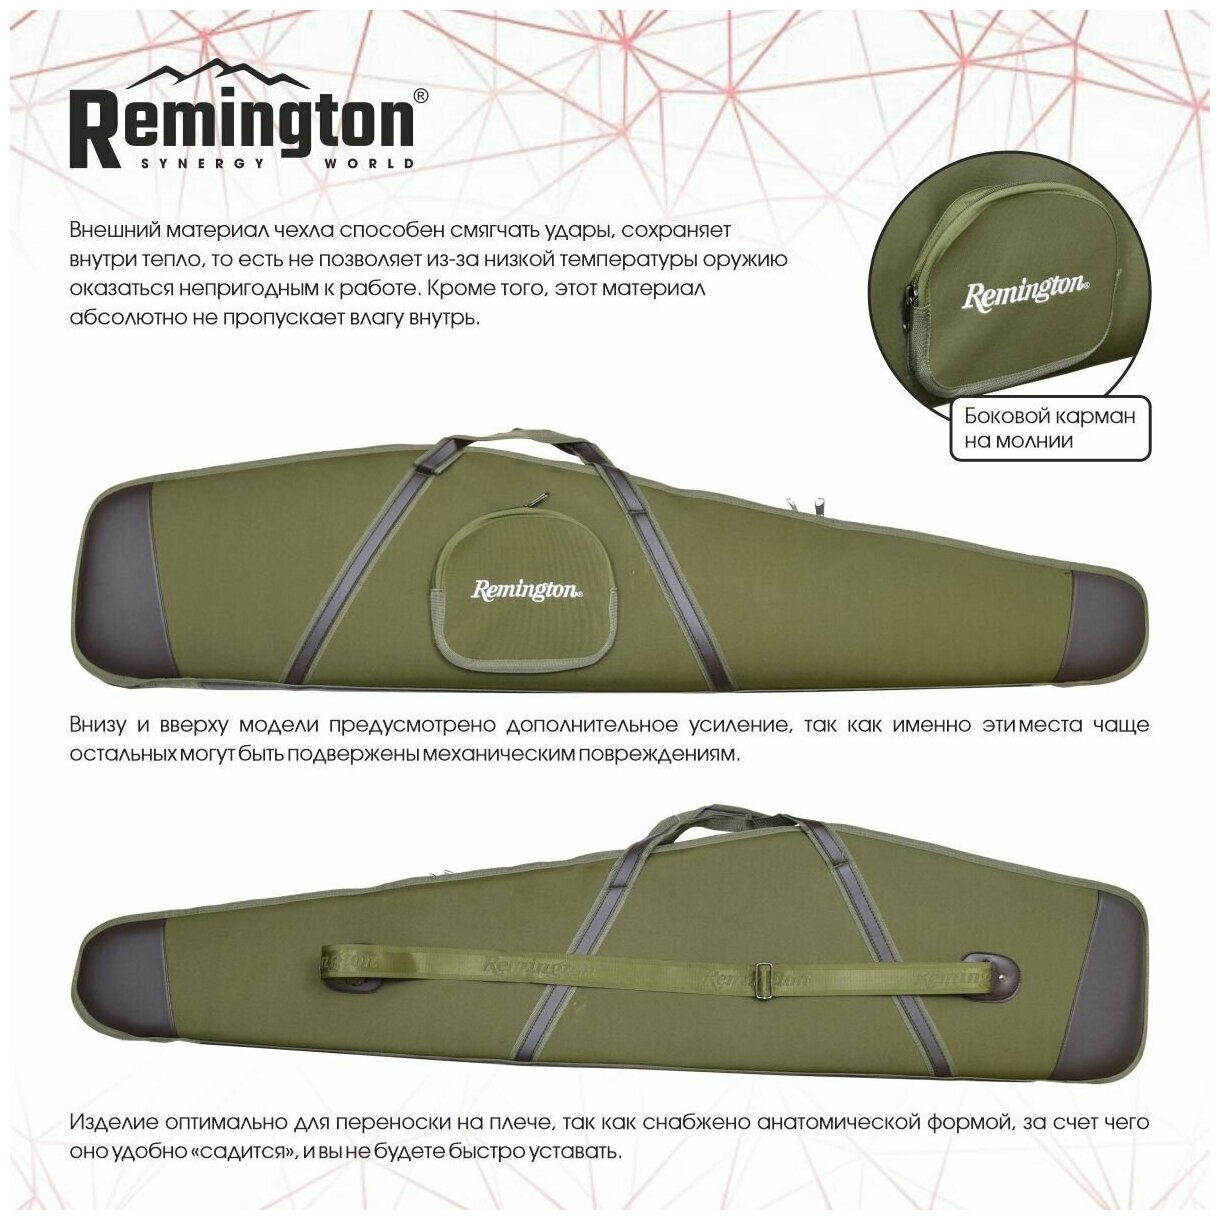 Чехол оружейный Remington с оптикой 137x15x31x6 (зеленый) GB-9050A137